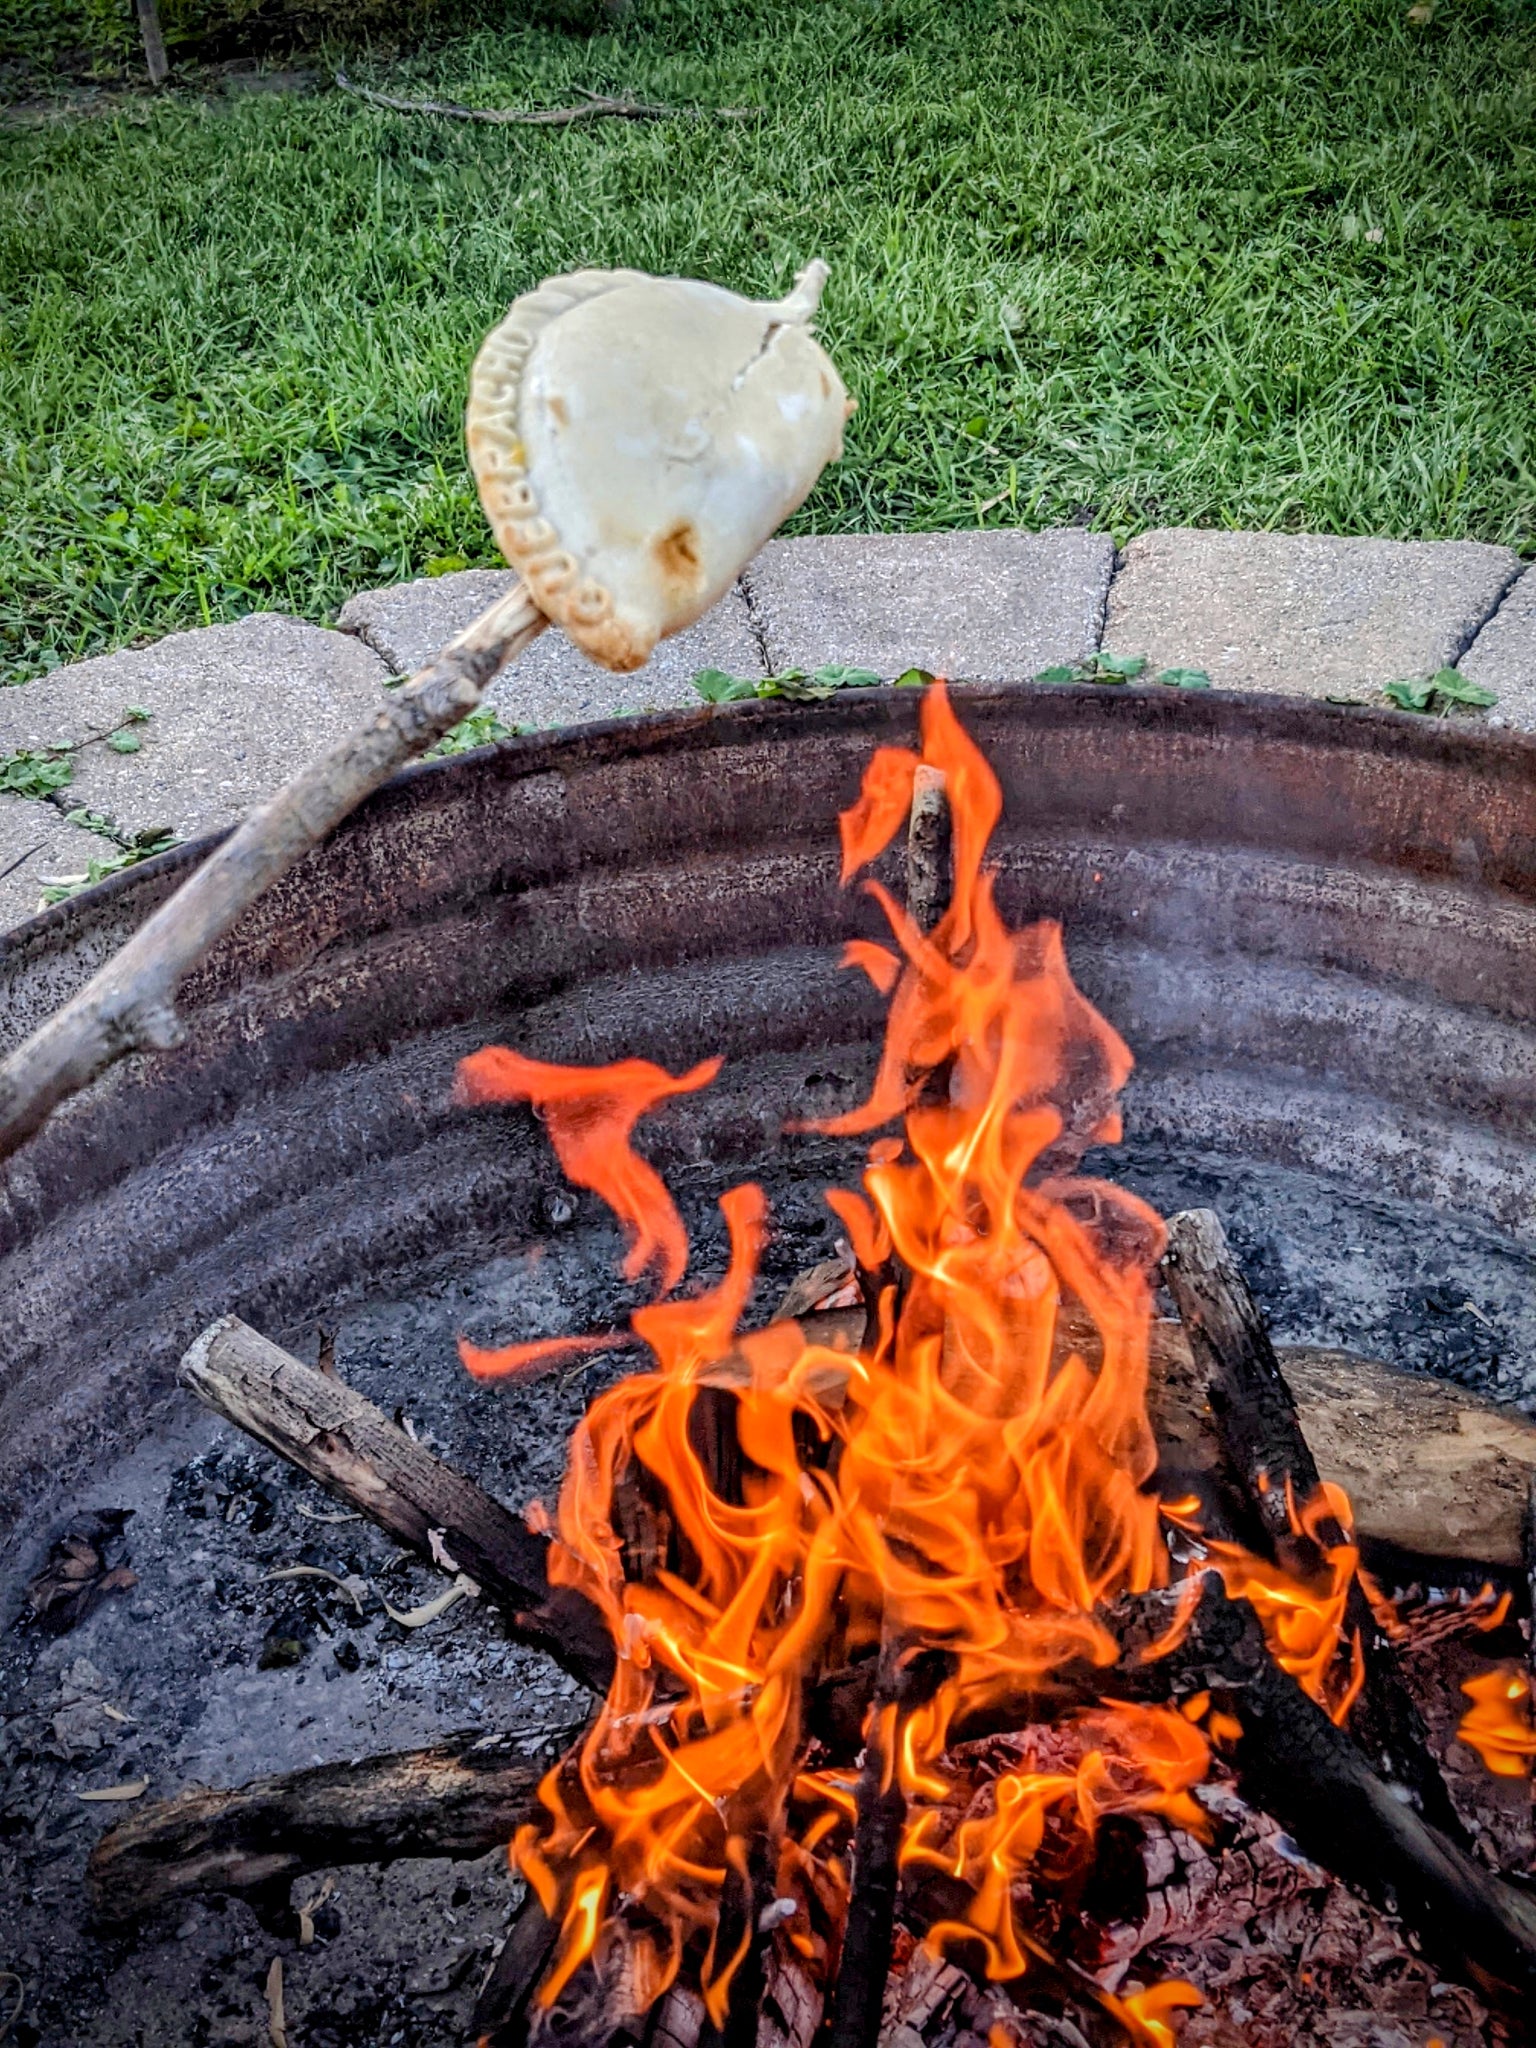 Fire Roasted Empanada